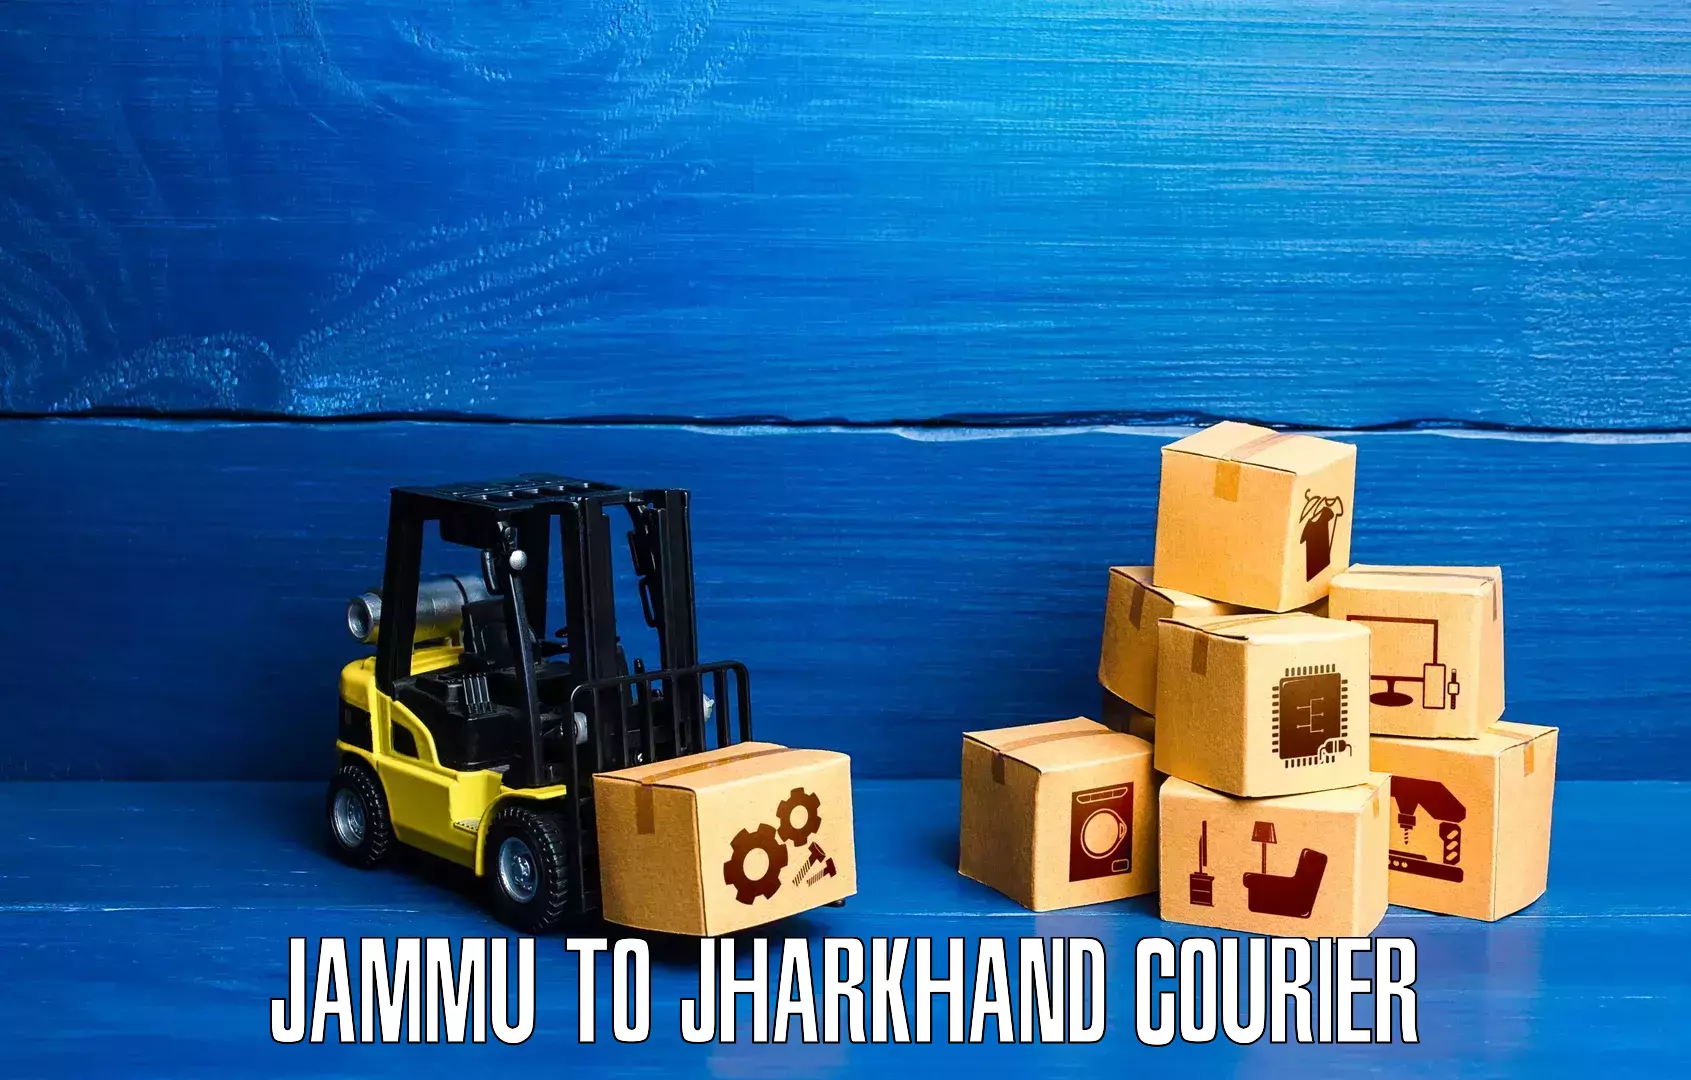 International courier networks Jammu to Garhwa